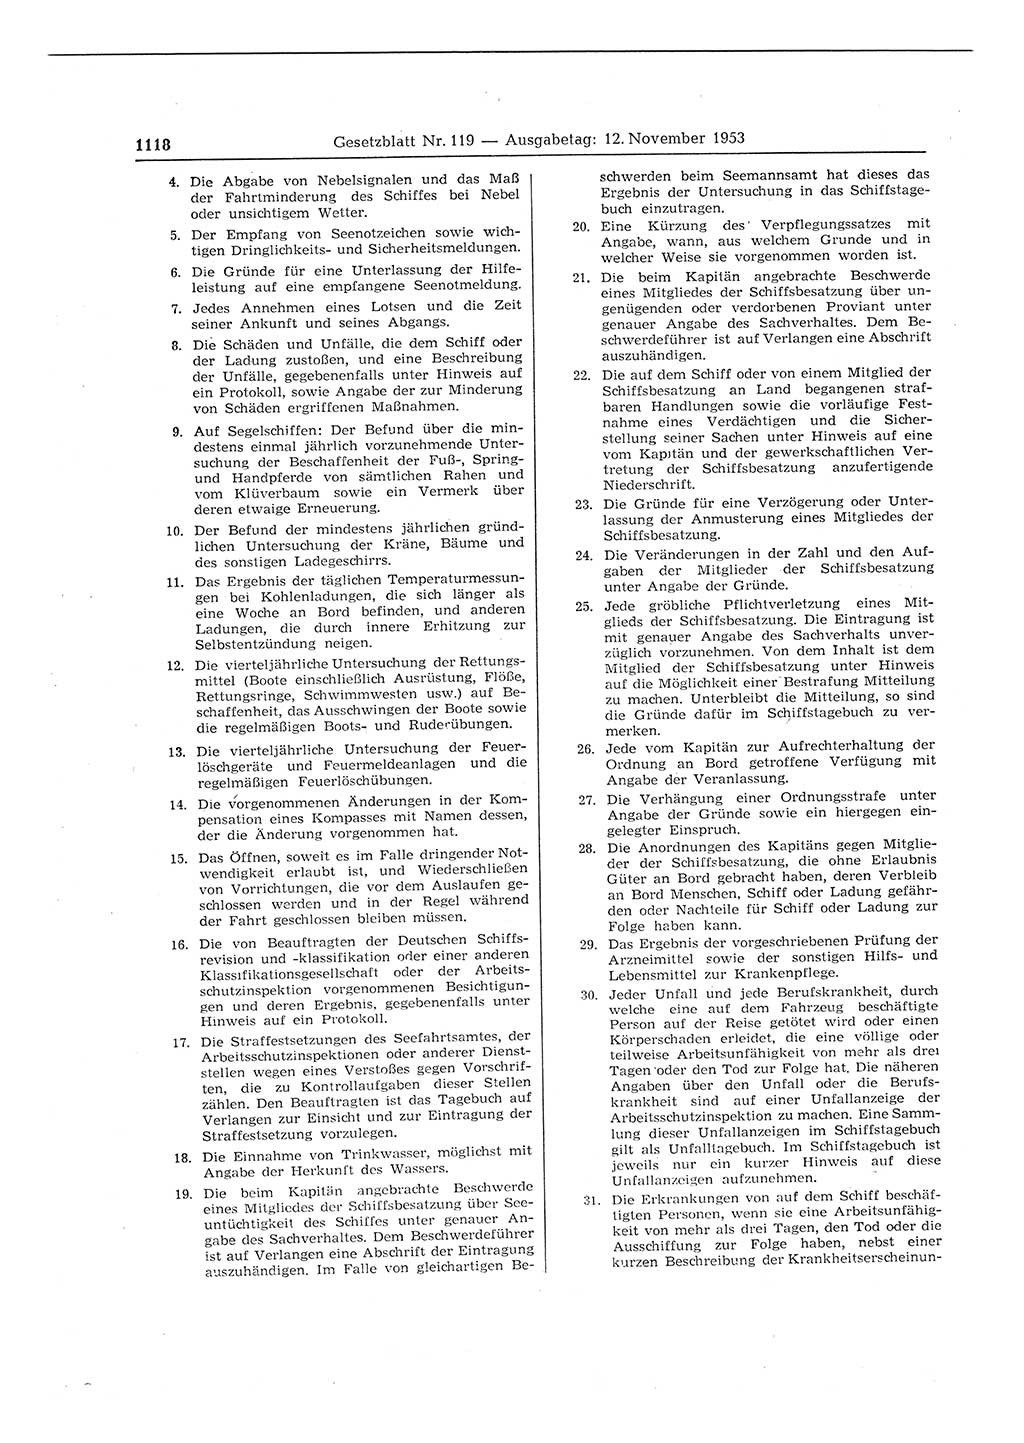 Gesetzblatt (GBl.) der Deutschen Demokratischen Republik (DDR) 1953, Seite 1118 (GBl. DDR 1953, S. 1118)